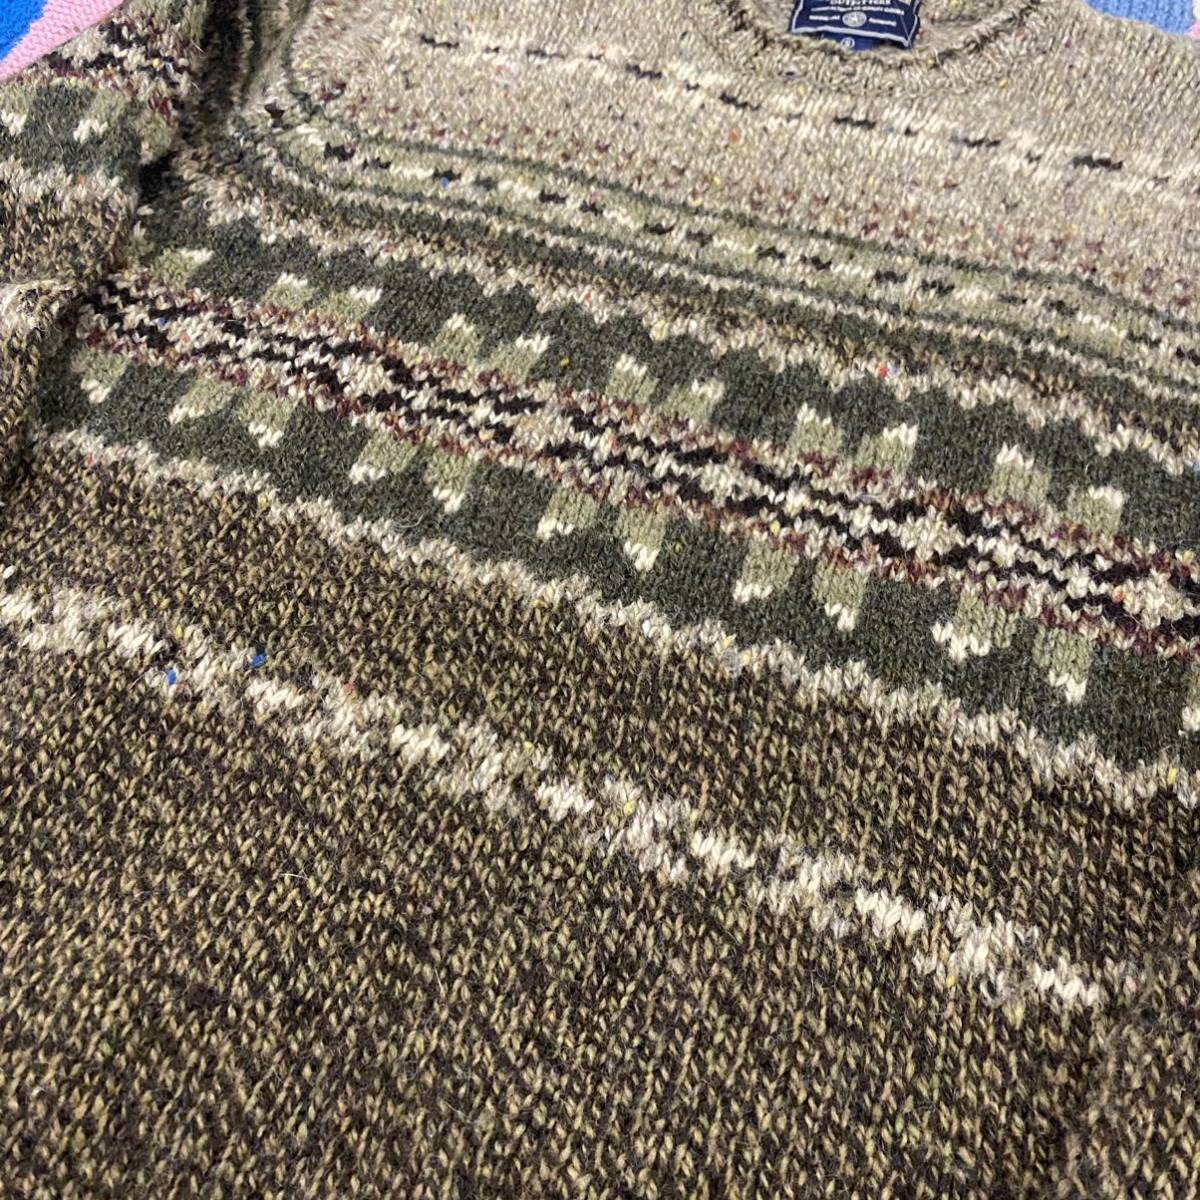 old American eagle heavy wool design knit sweater アメリカンイーグル ウールニット デザインセーター 90s 00s 柄ニット_画像8